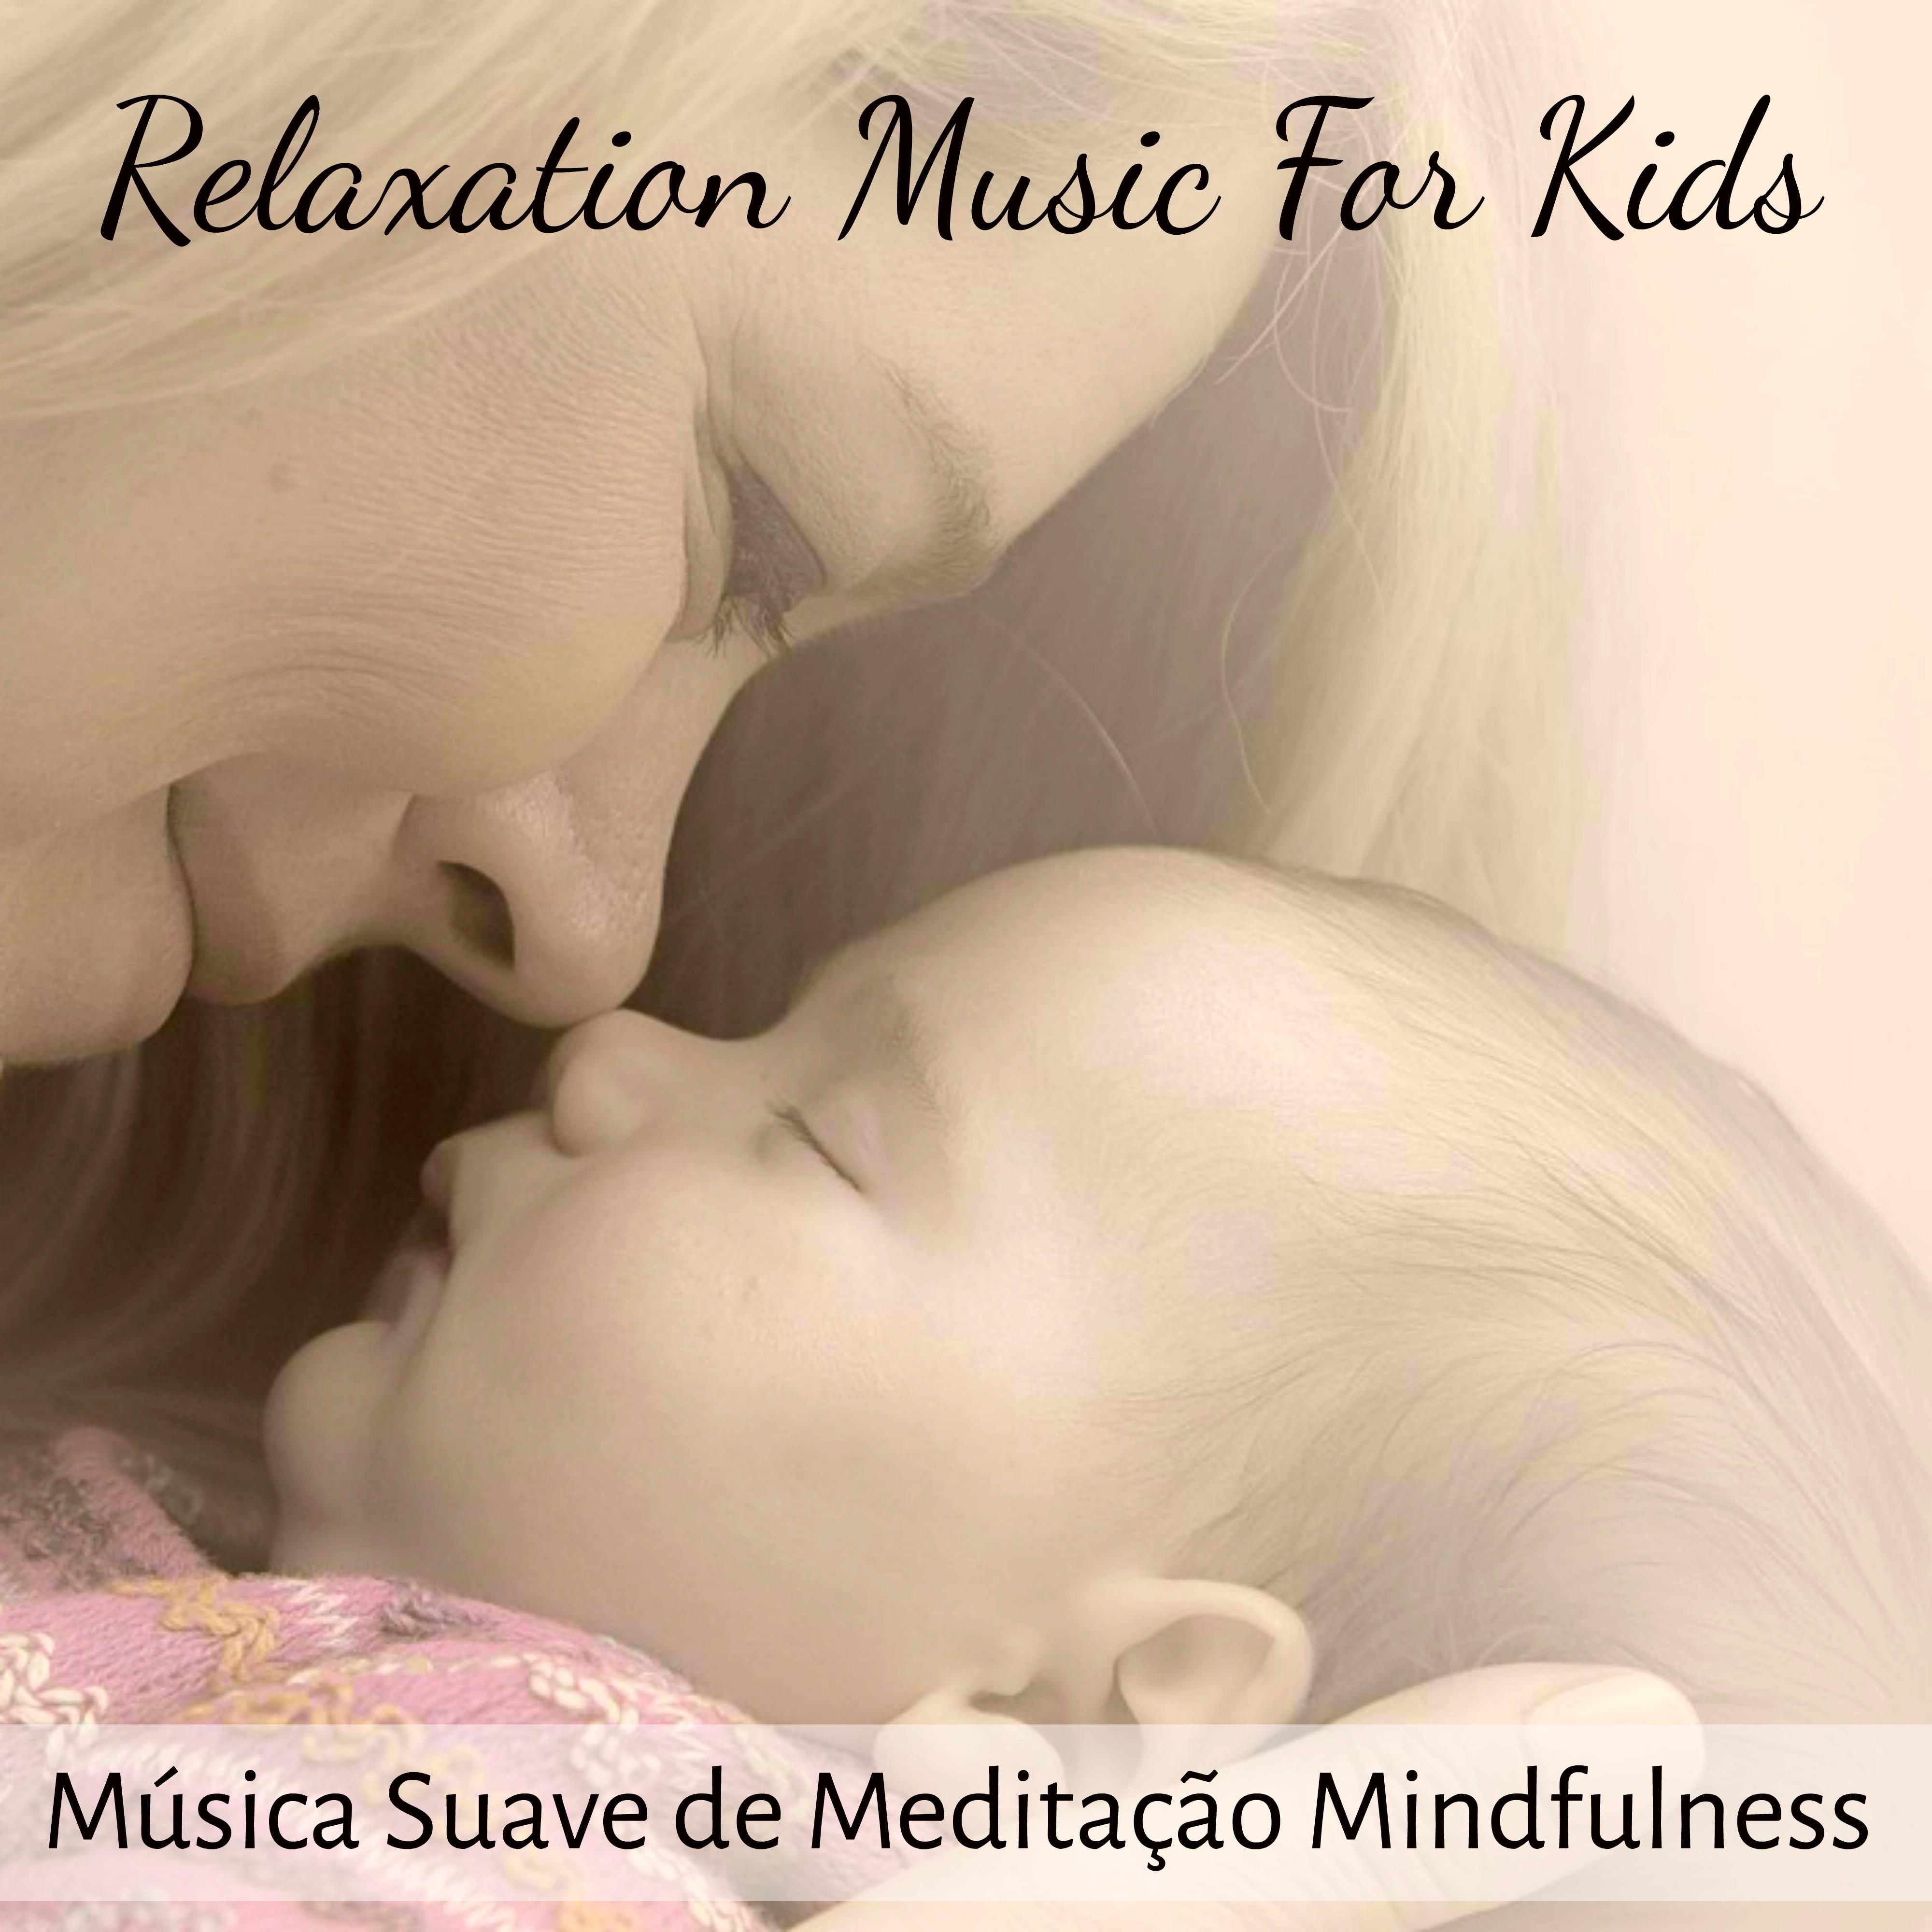 Relaxation Music For Kids  Mu sica Suave de Medita o Mindfulness para Espirito de Luz Cantigas de Ninar Crian as de Relaxamento com Sons da Natureza Instrumentais New Age